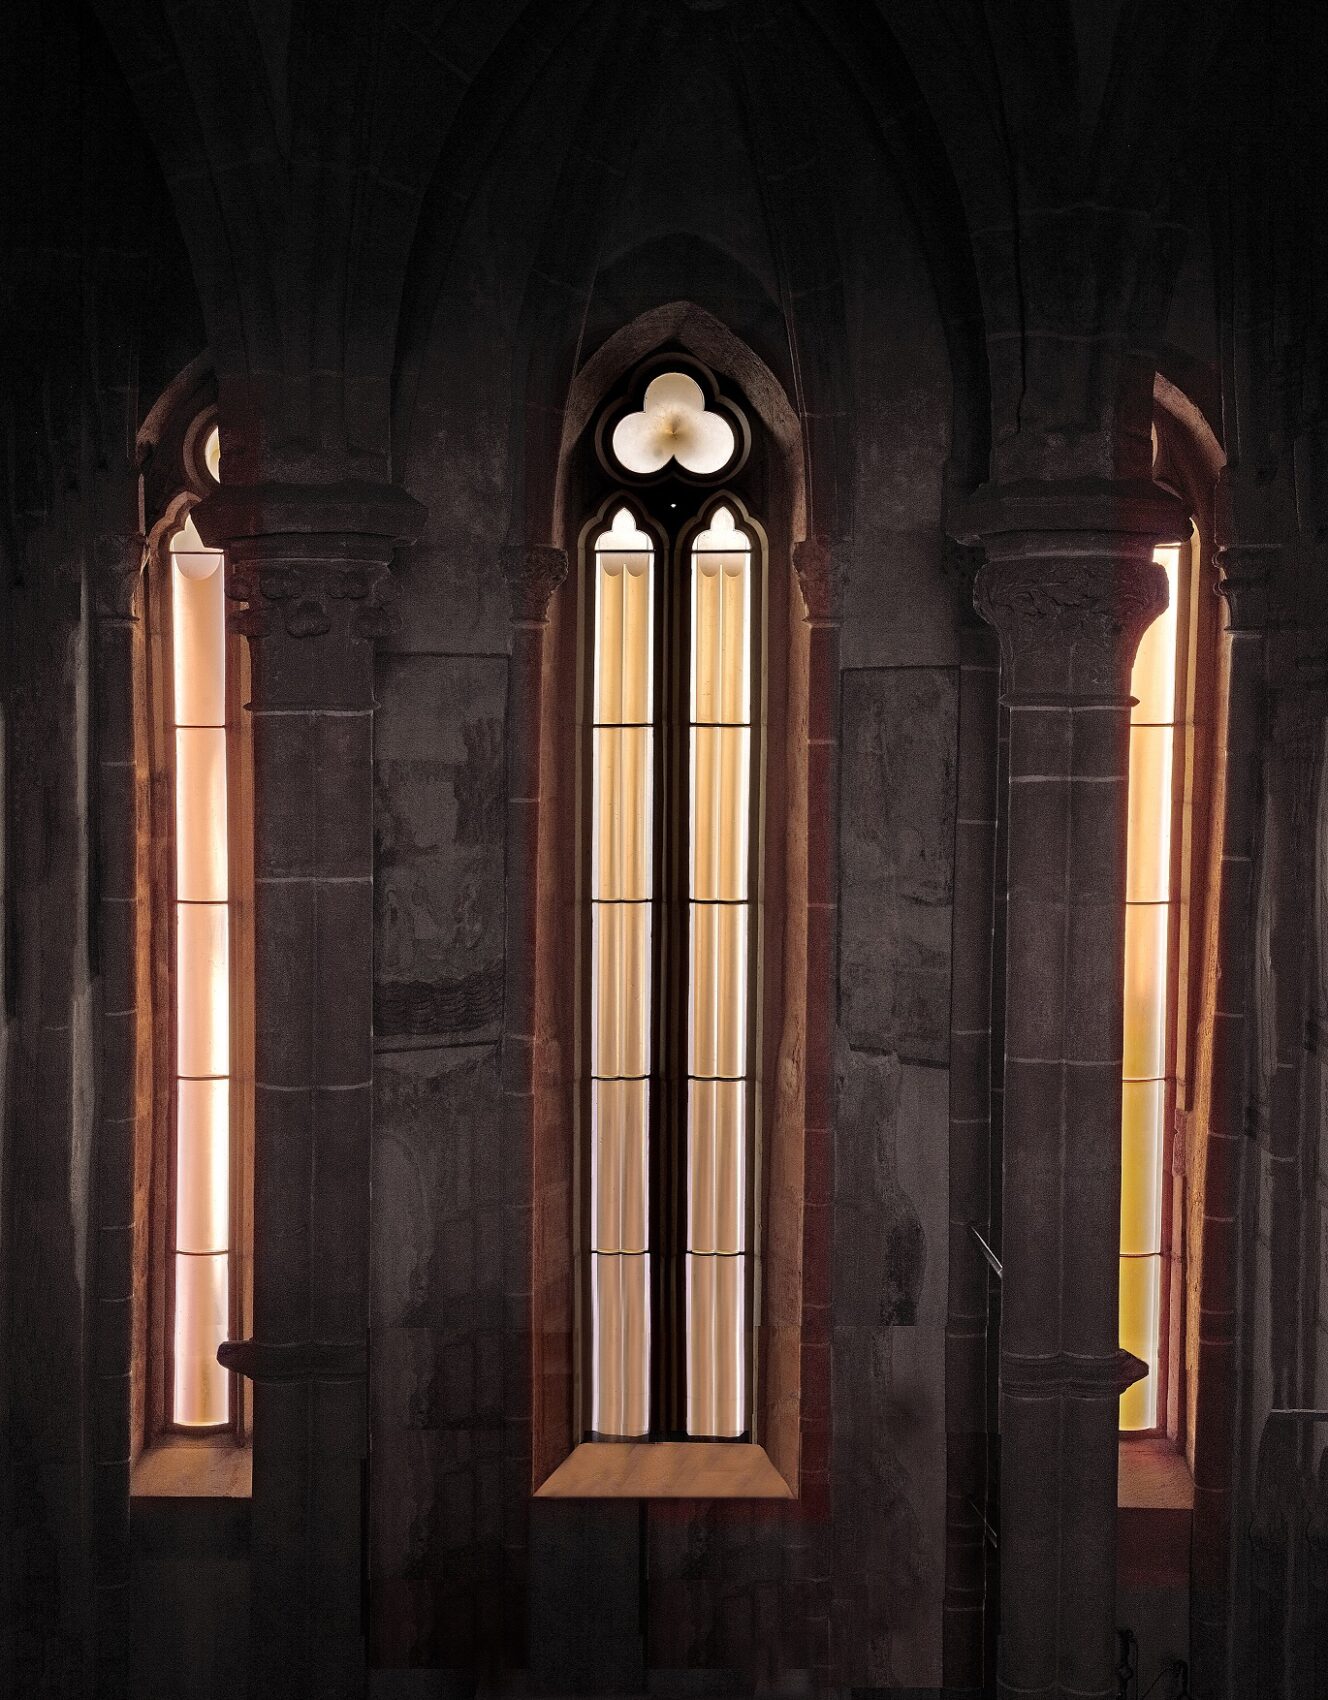 Okna – vitraile v zámecké kapli v Horšovském Týně.